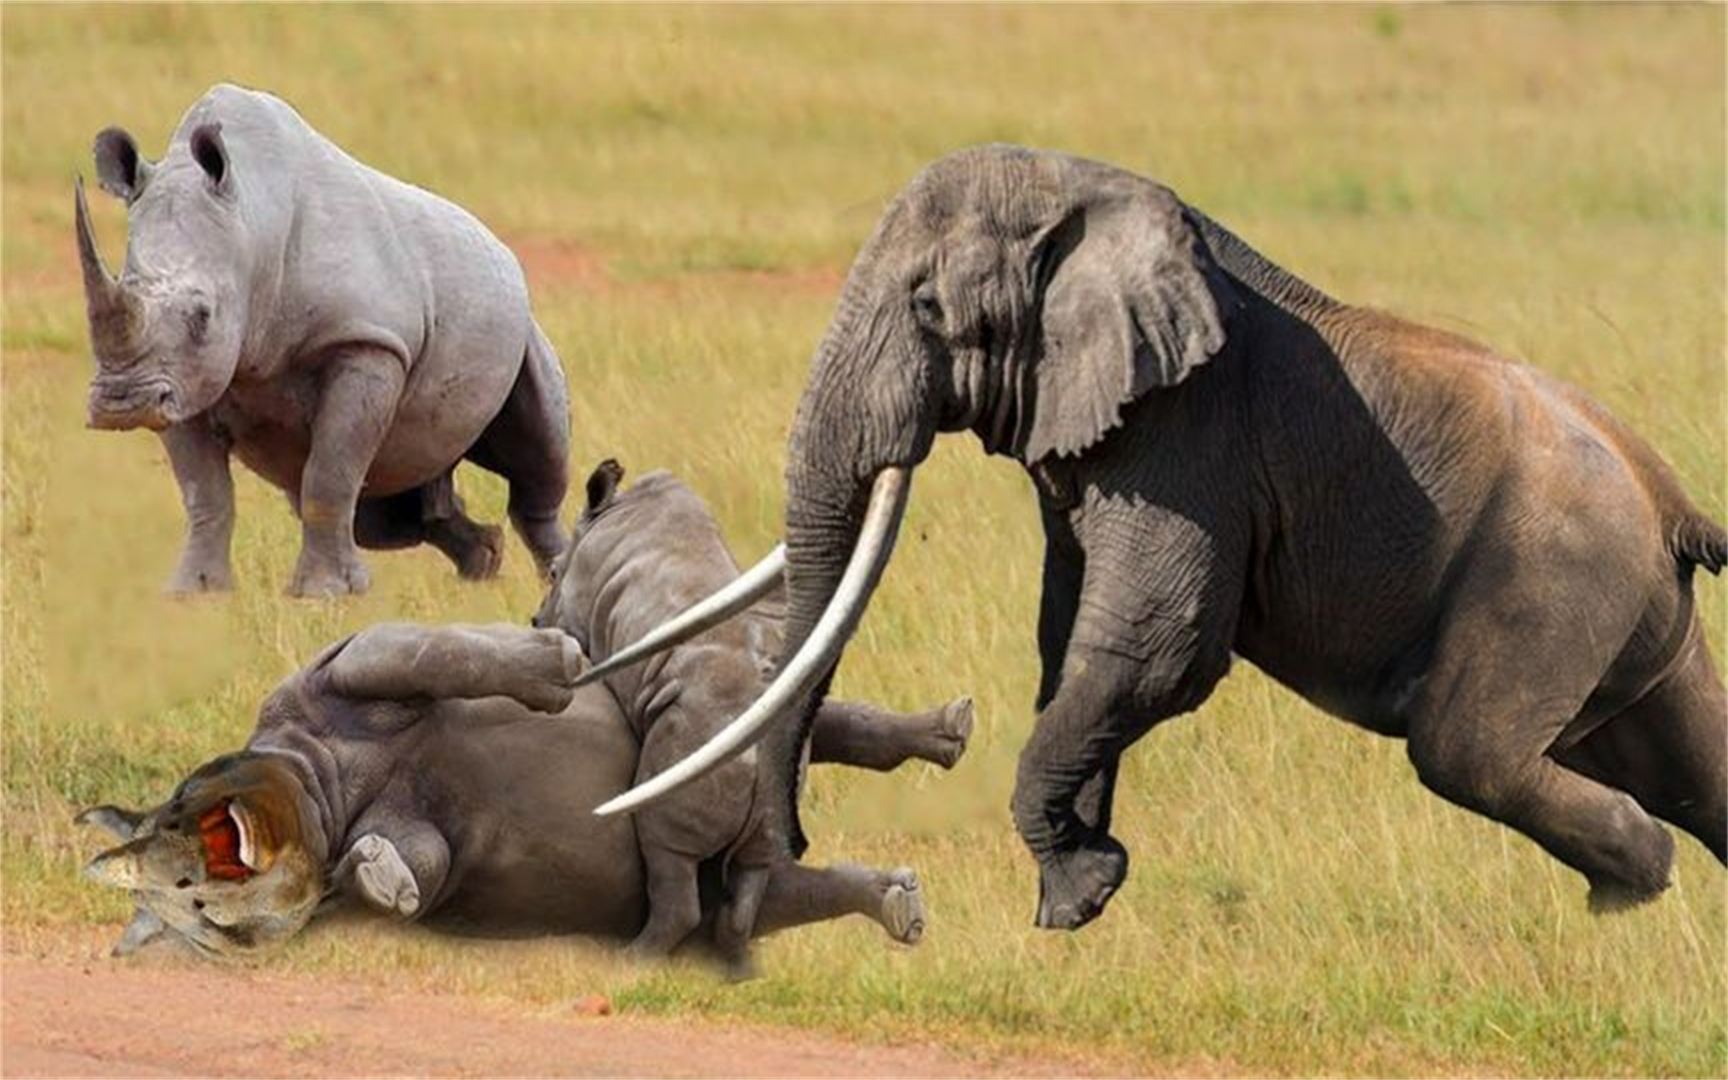 犀牛与大象的战斗,大型动物,为了领地而战,犀牛节节败退!